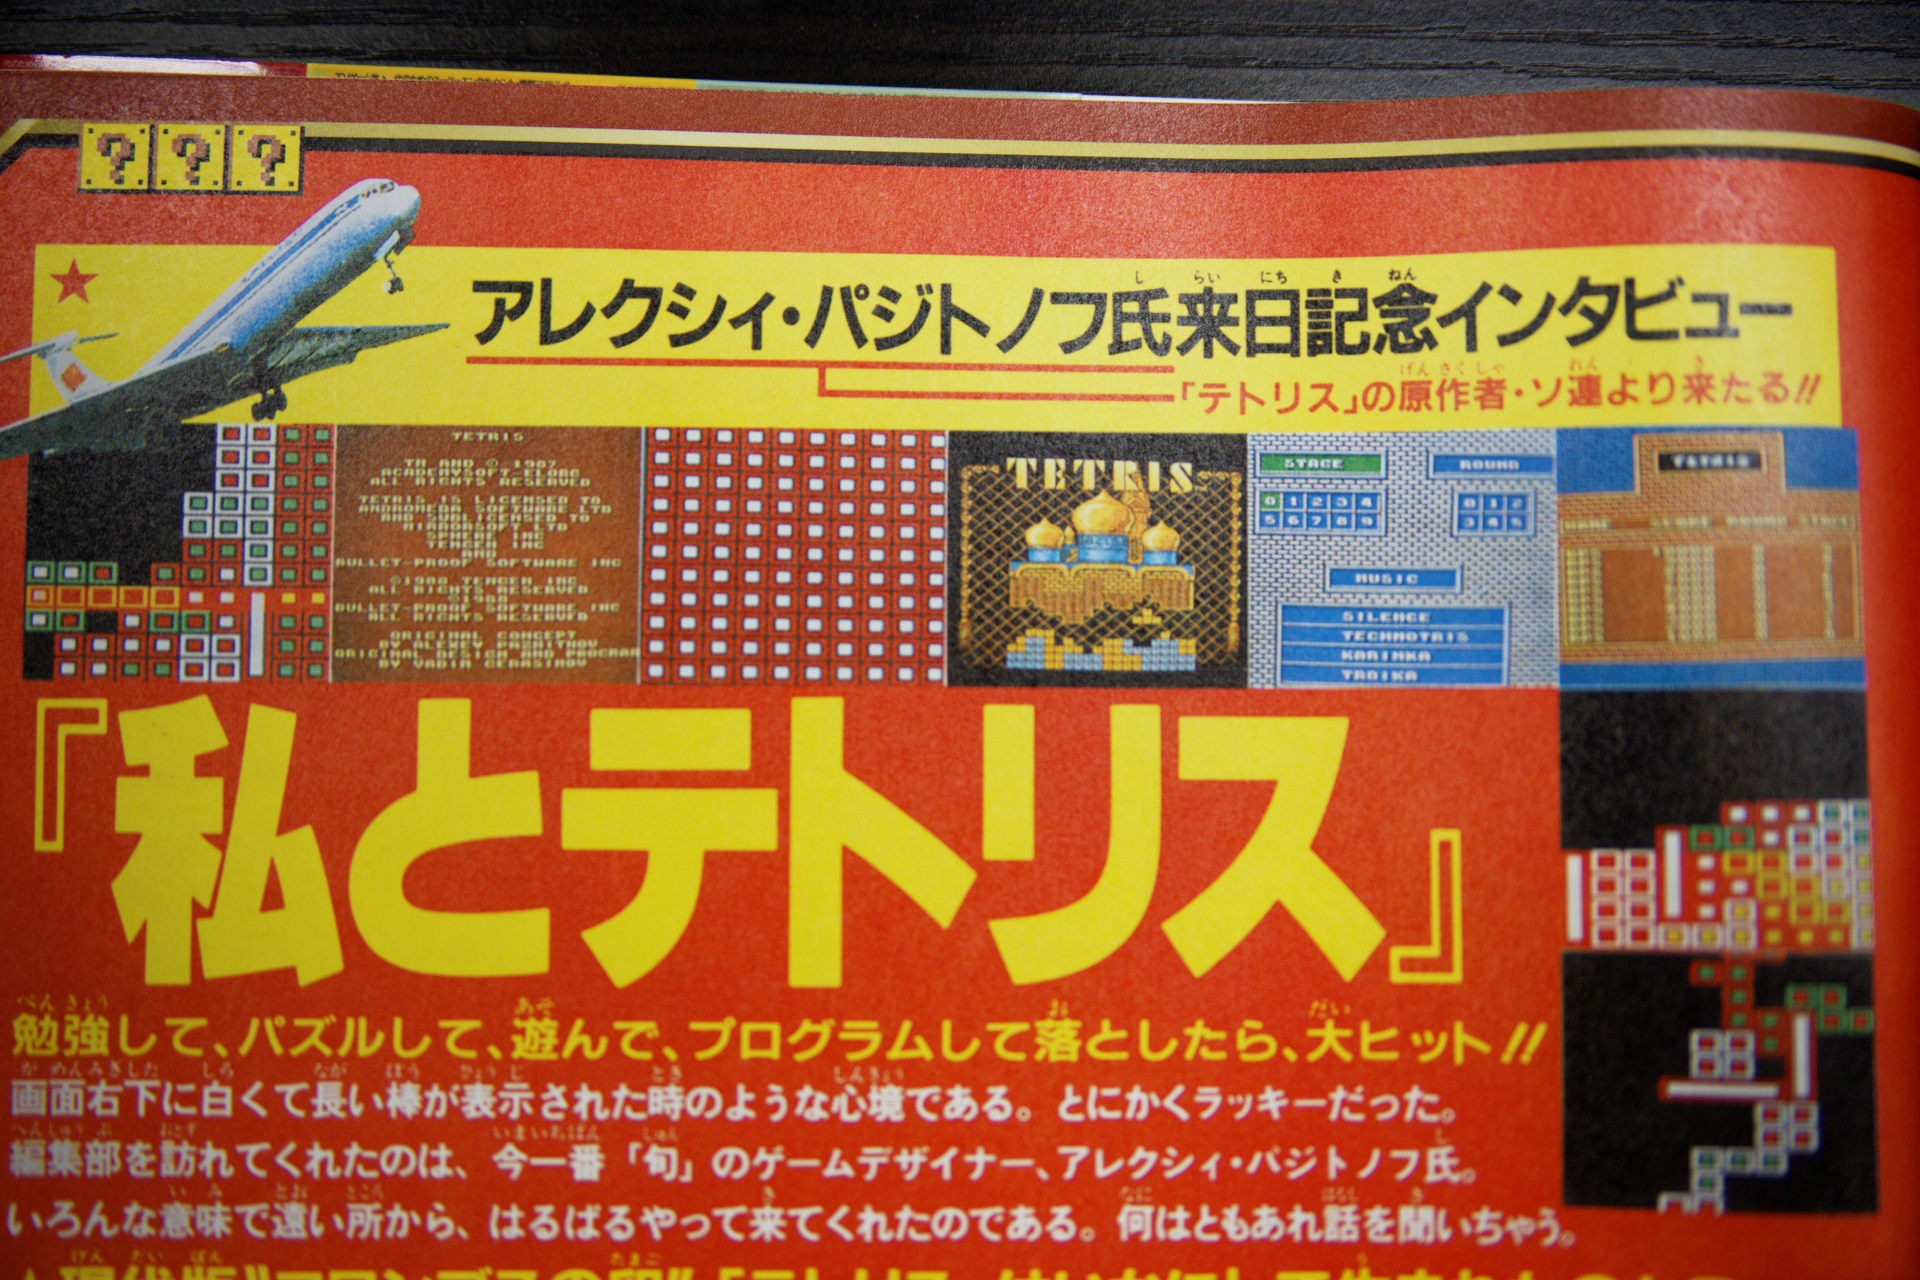 蘇るファミコン必勝本』 全104号の歴史を収録 「伝説のスーパーマリオ 